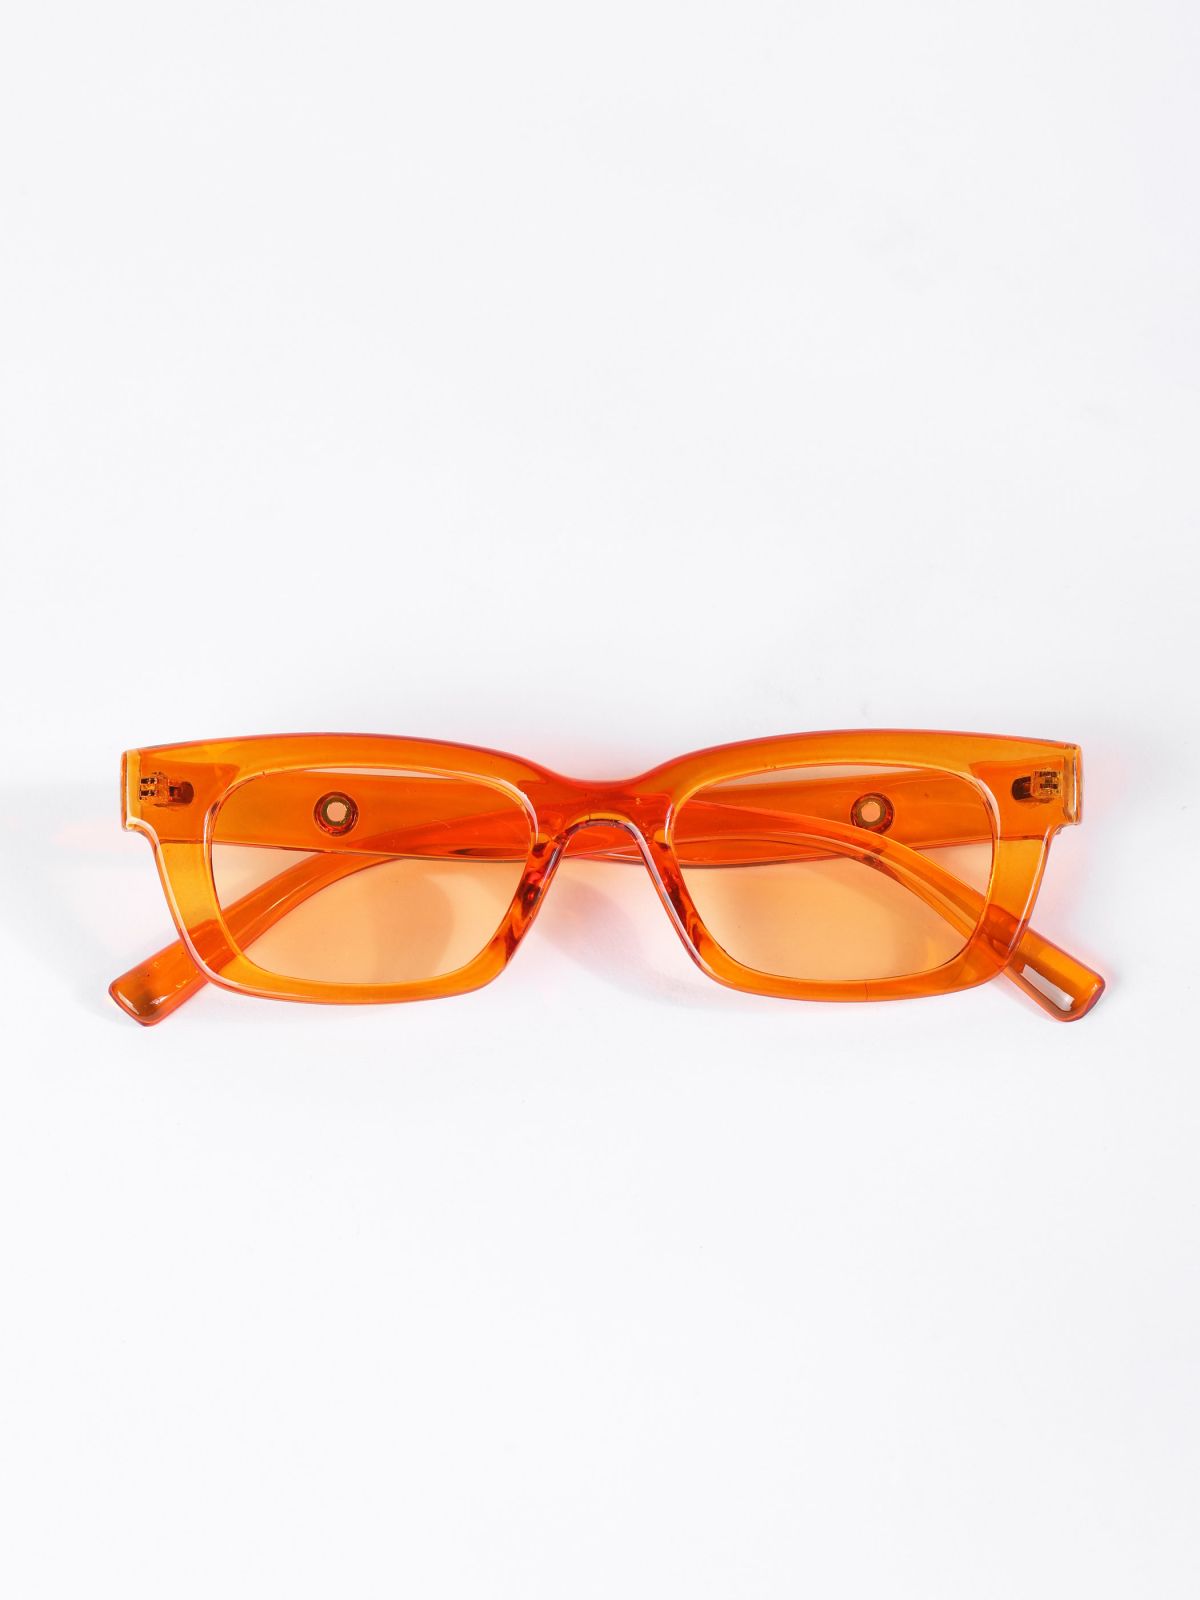  משקפי שמש מלבניים / TX Eyewear Collection של TERMINAL X